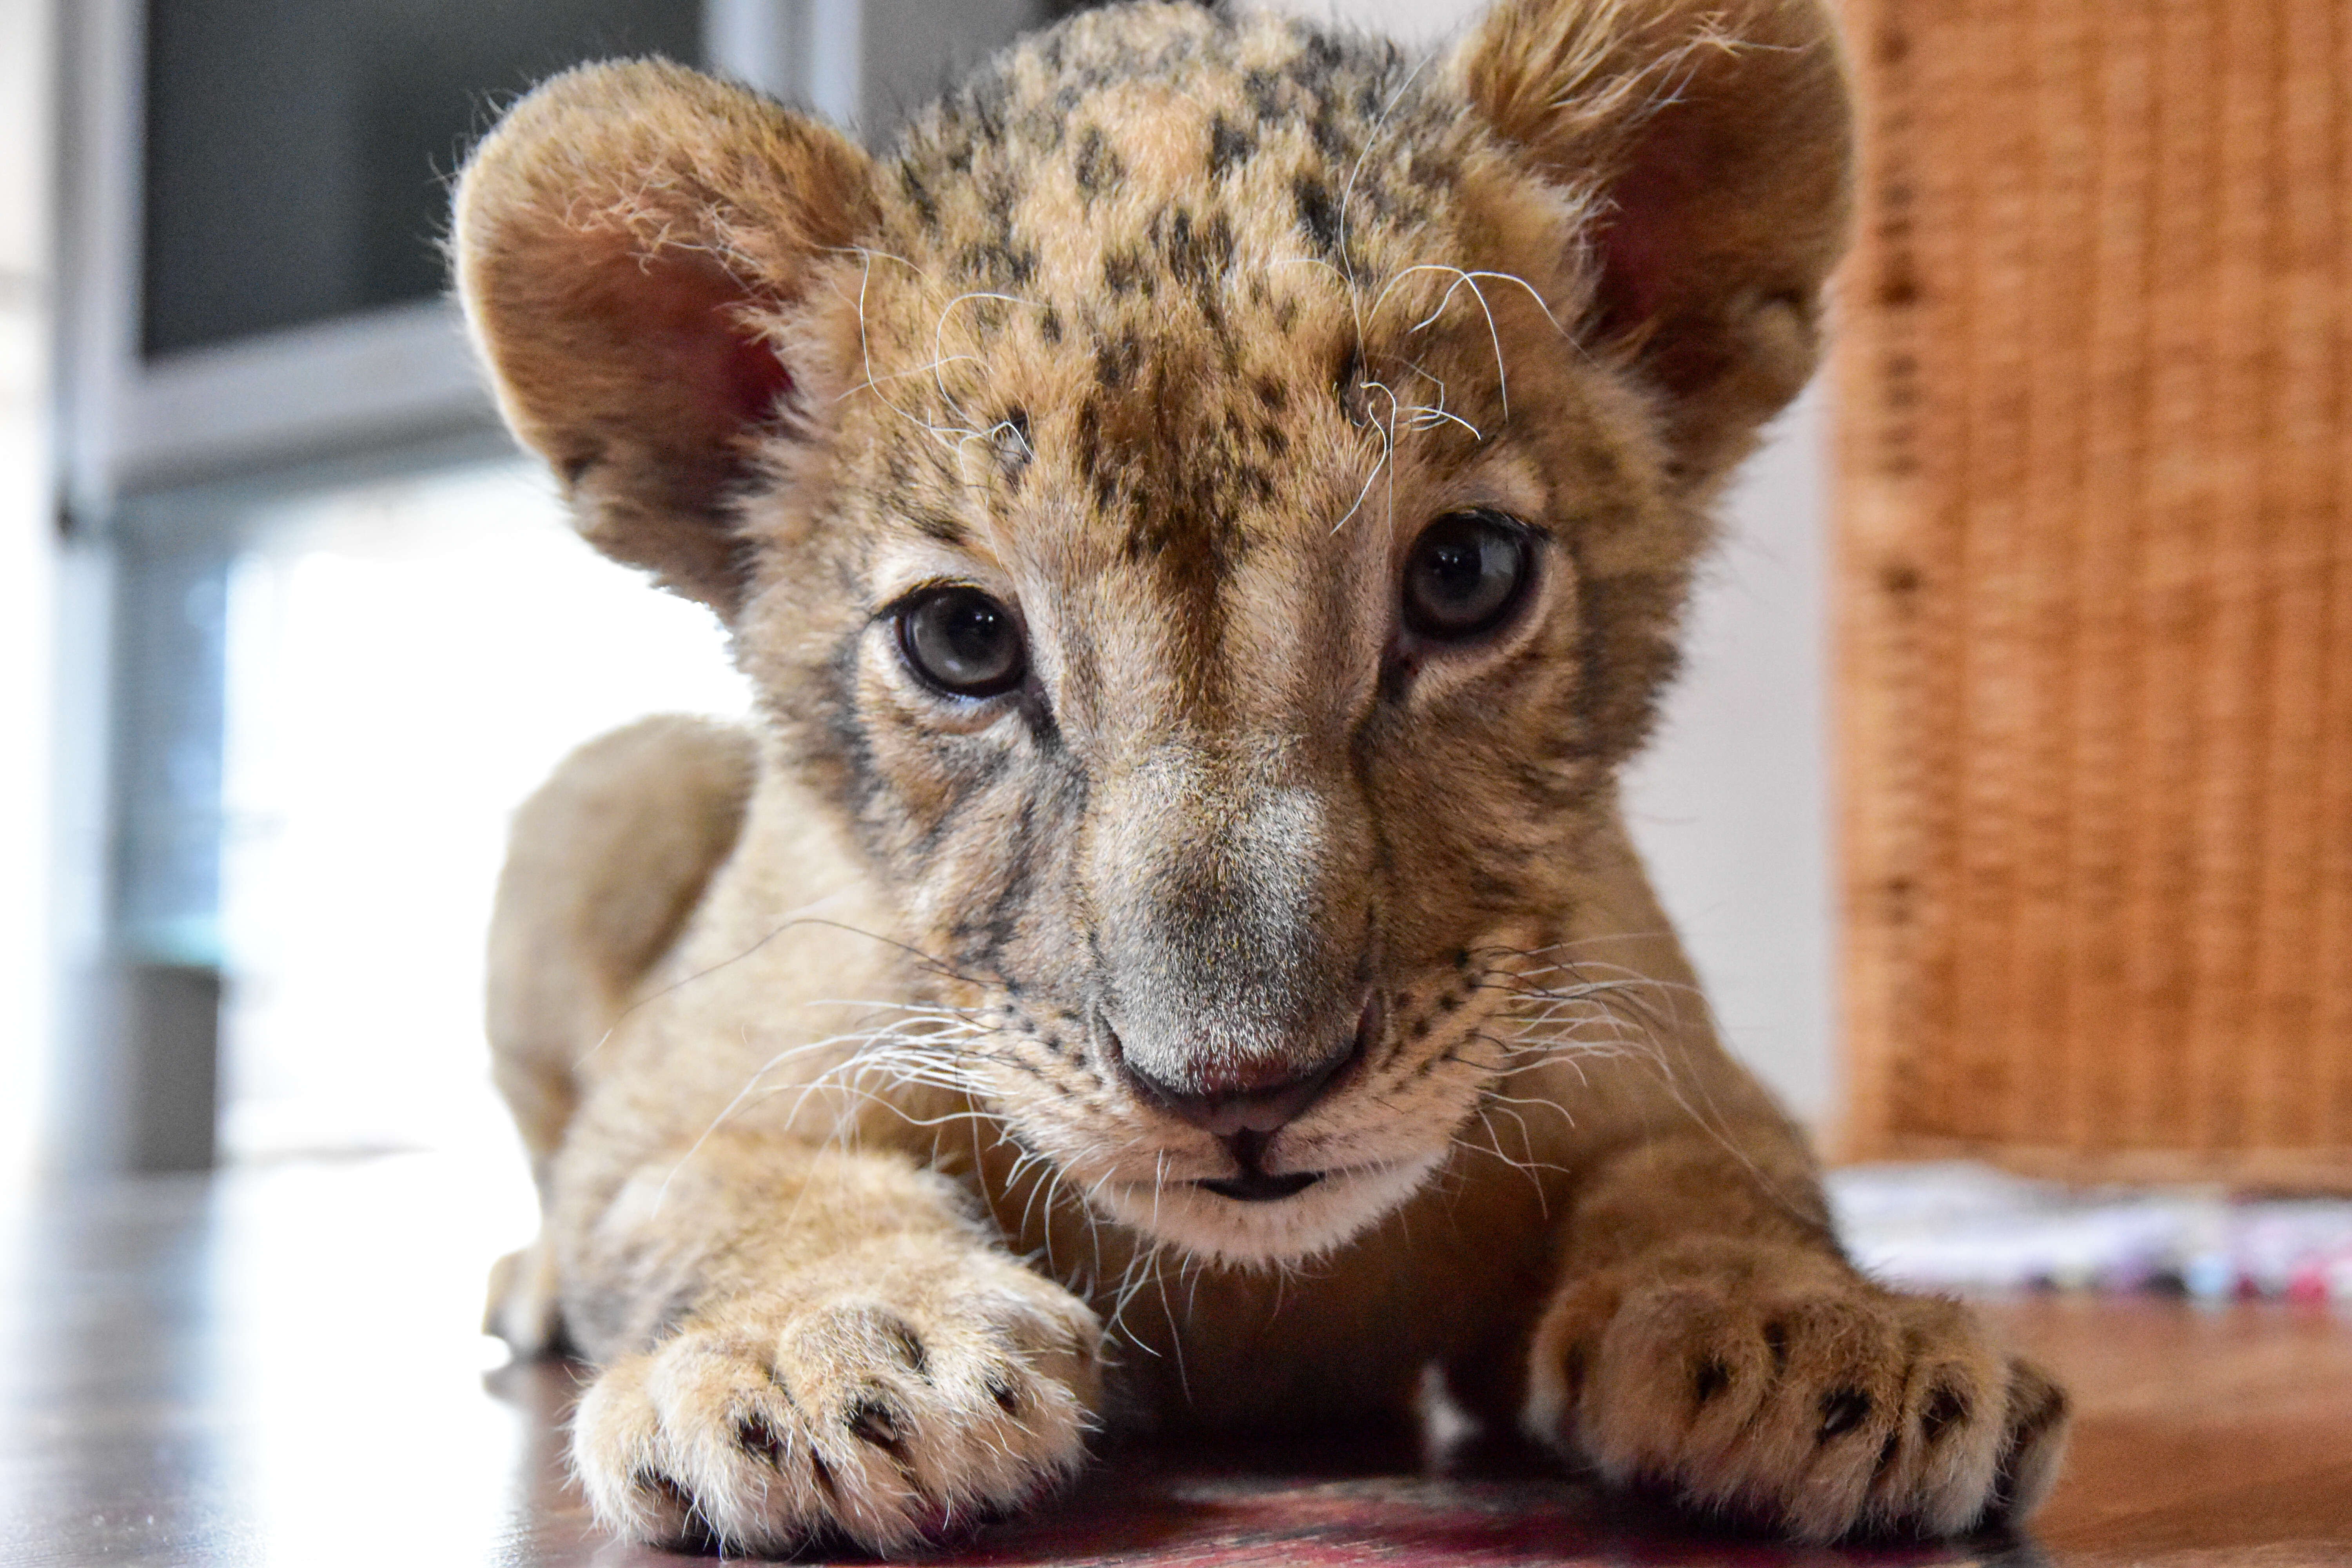 Rescued lion cub